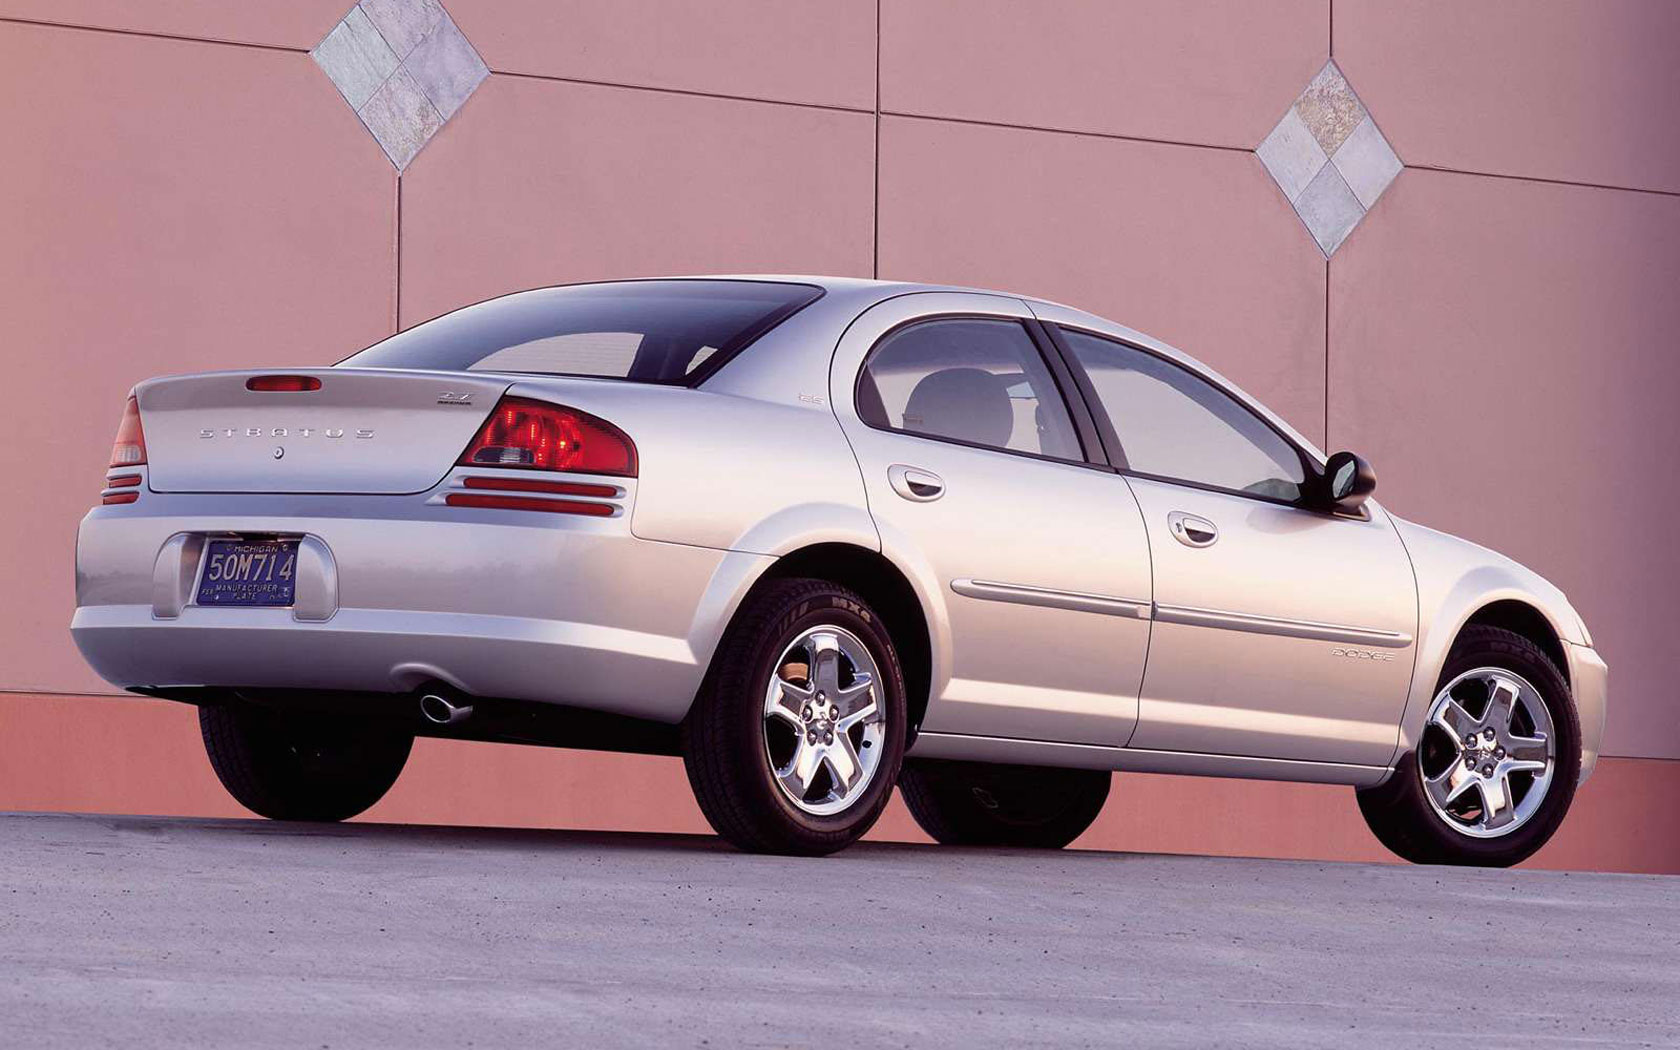  Dodge Stratus (2000-2003)